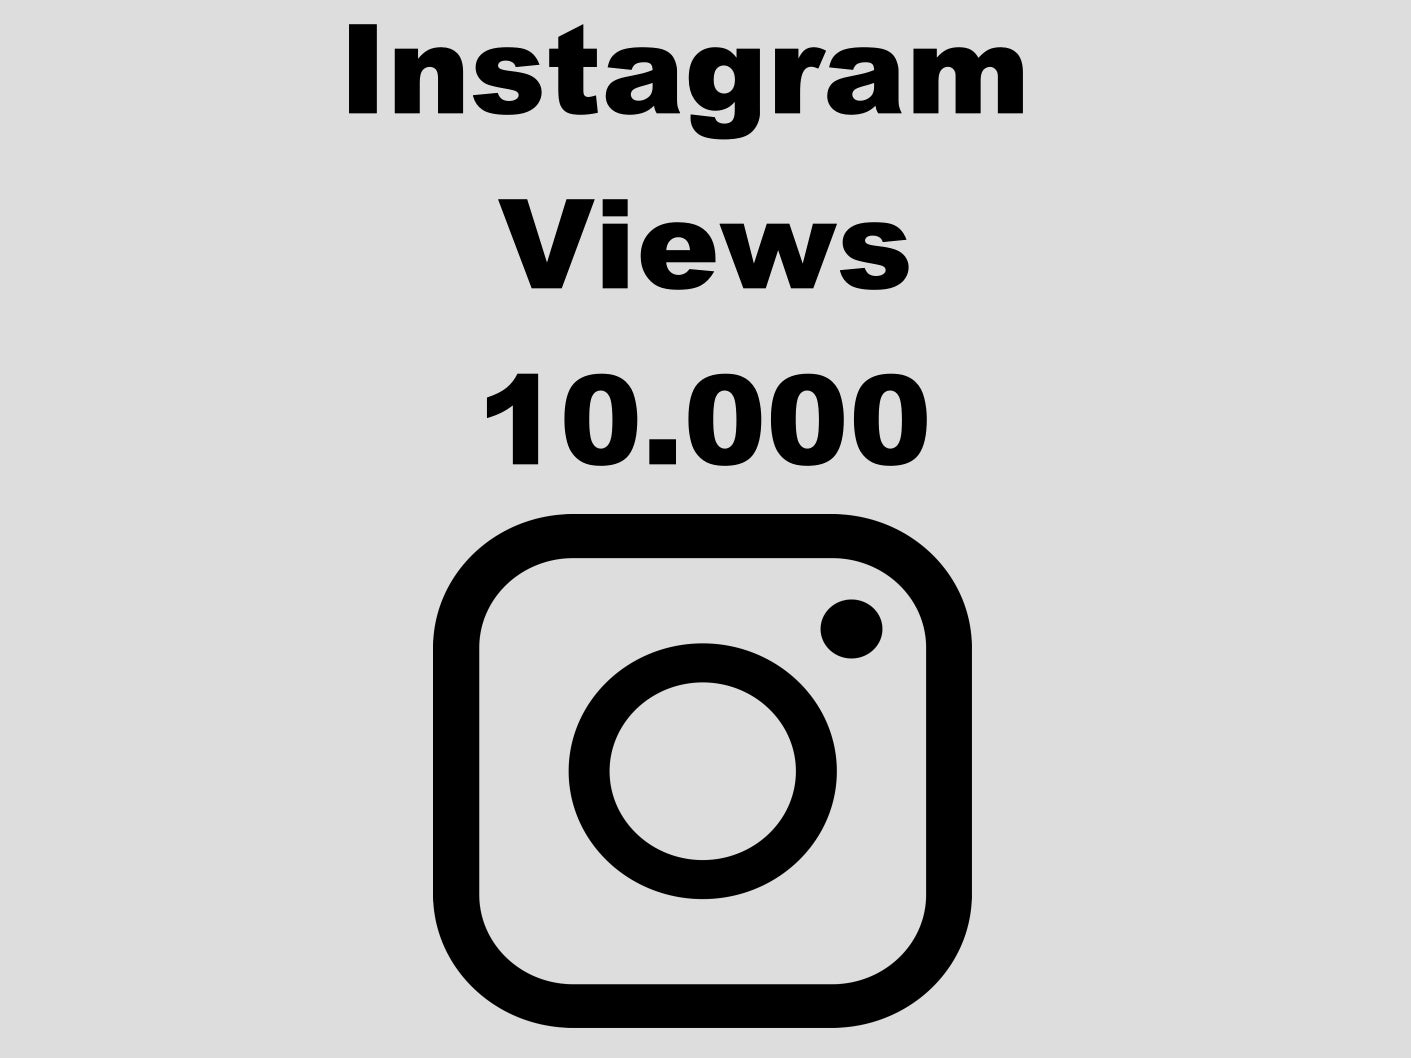 echte Instagram Views günstig kaufen 10.000 Views